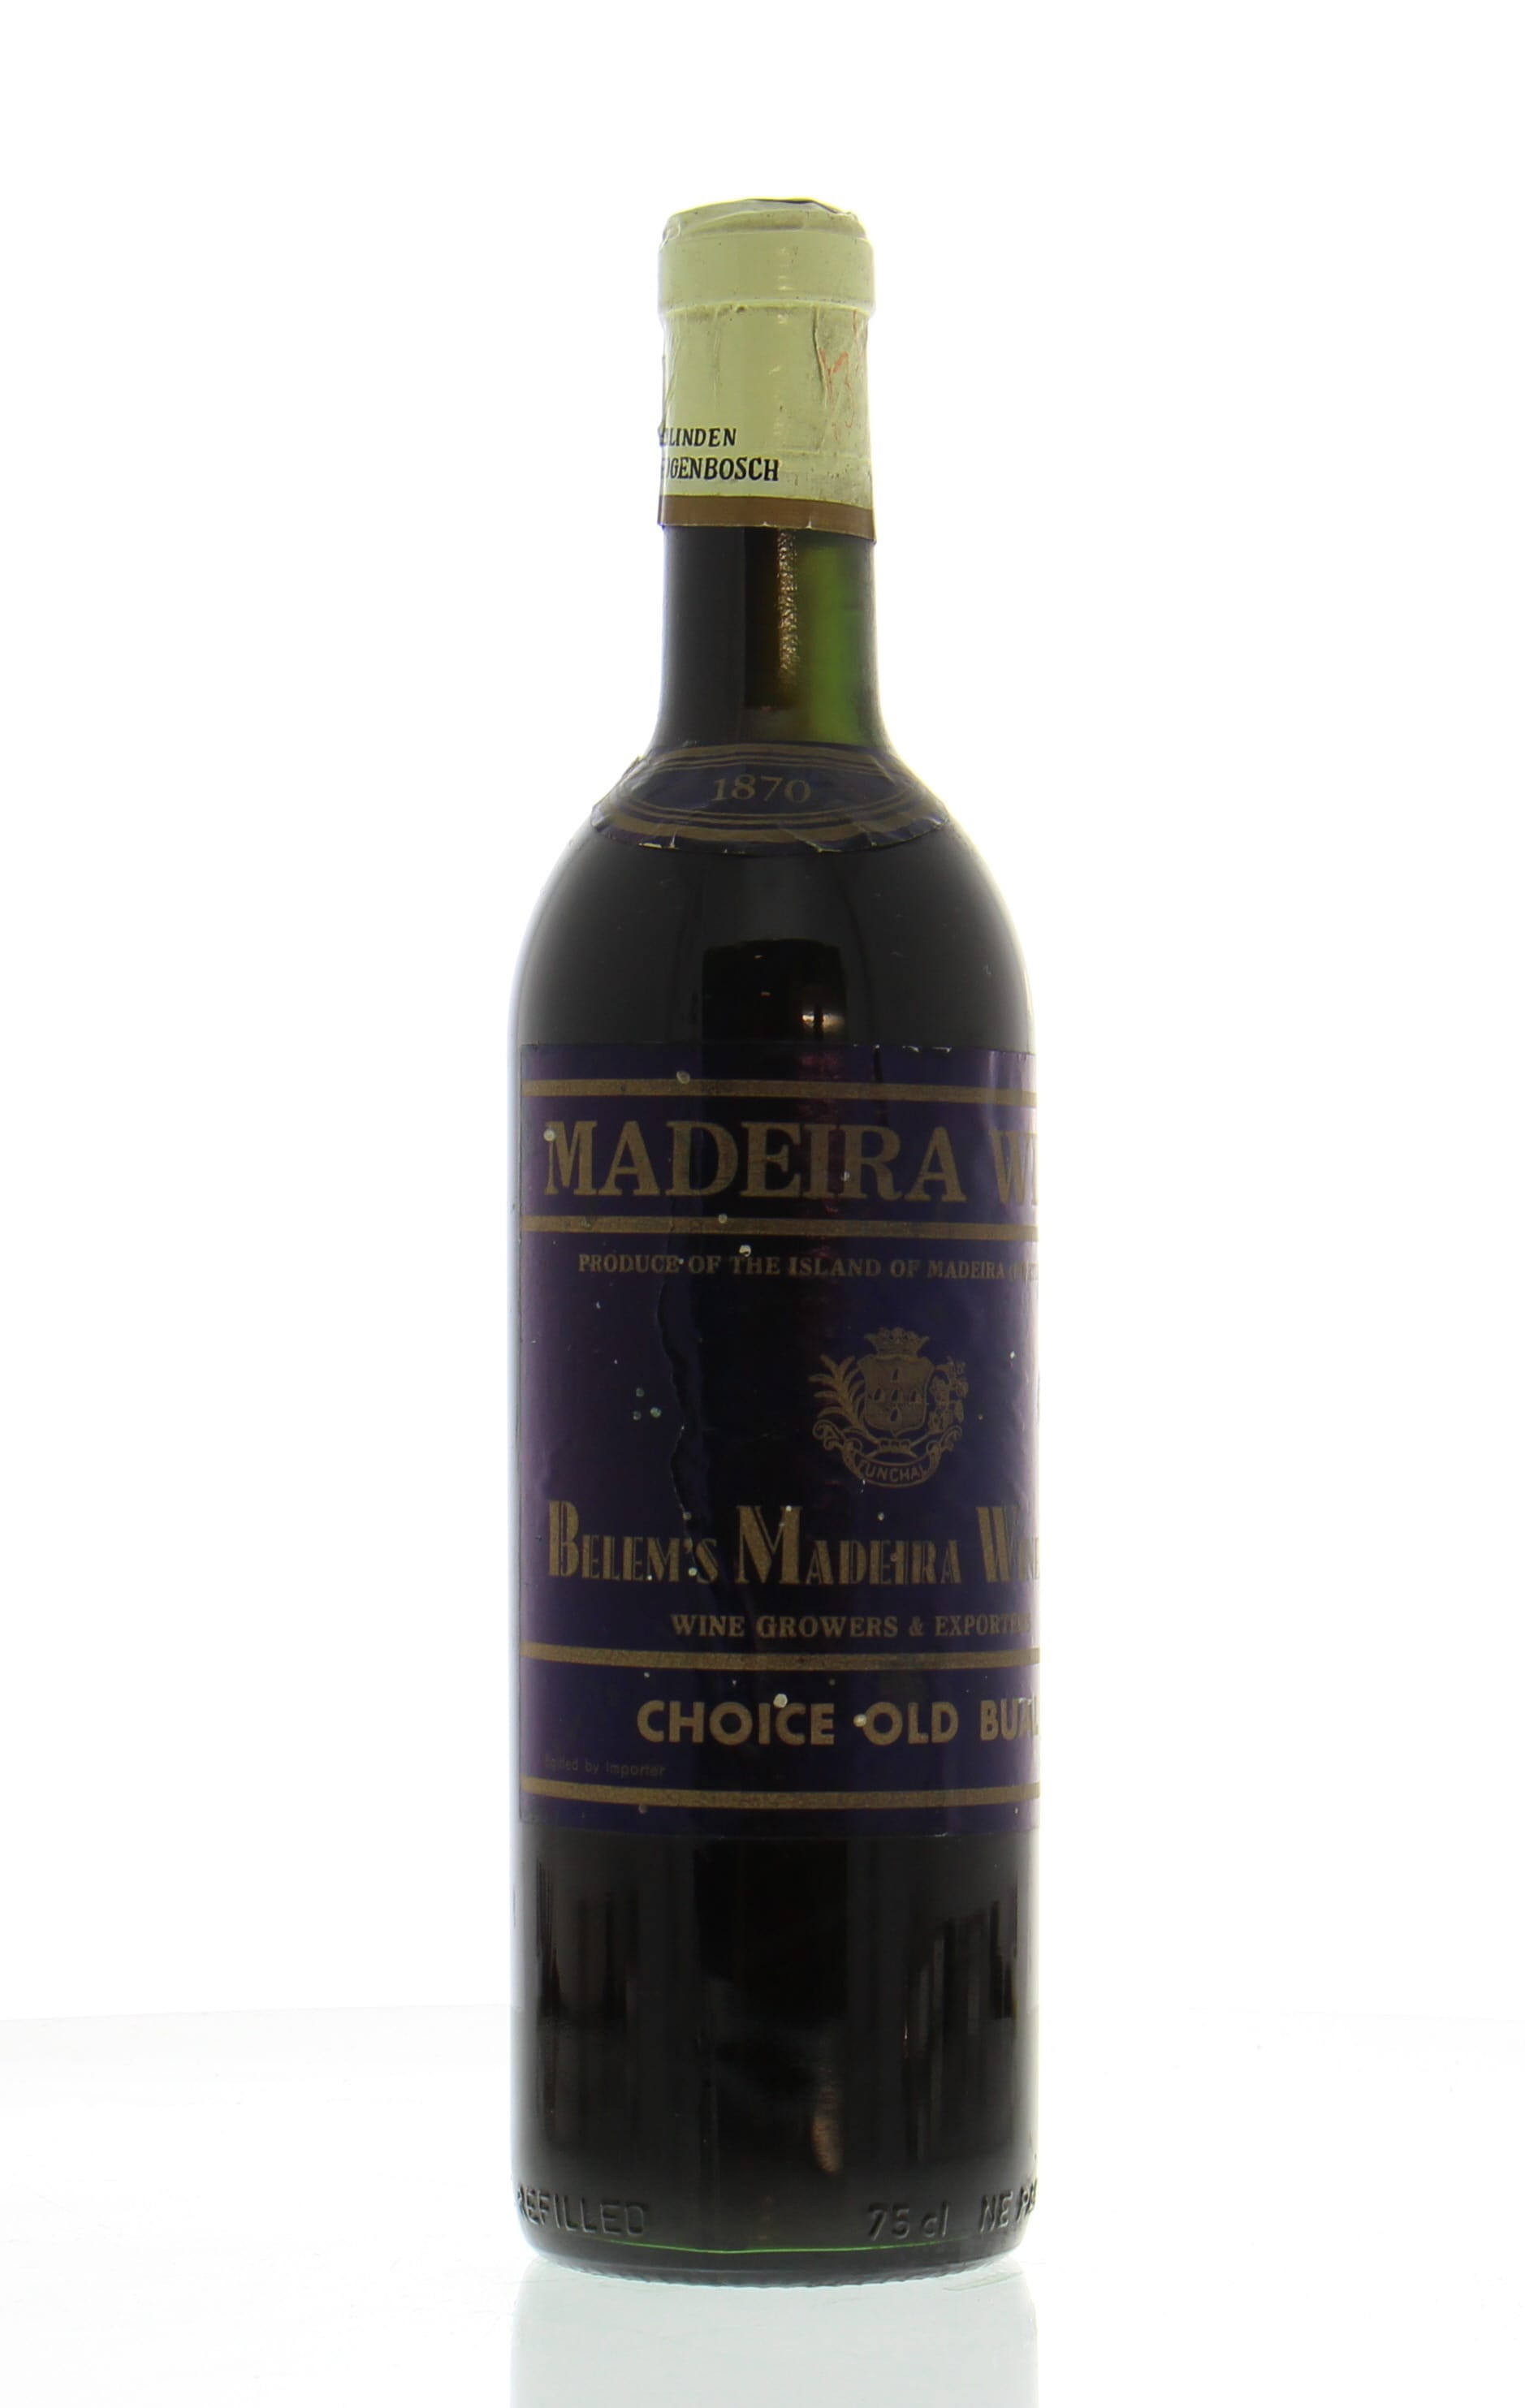 Belem - Madeira choice old Bual 1870